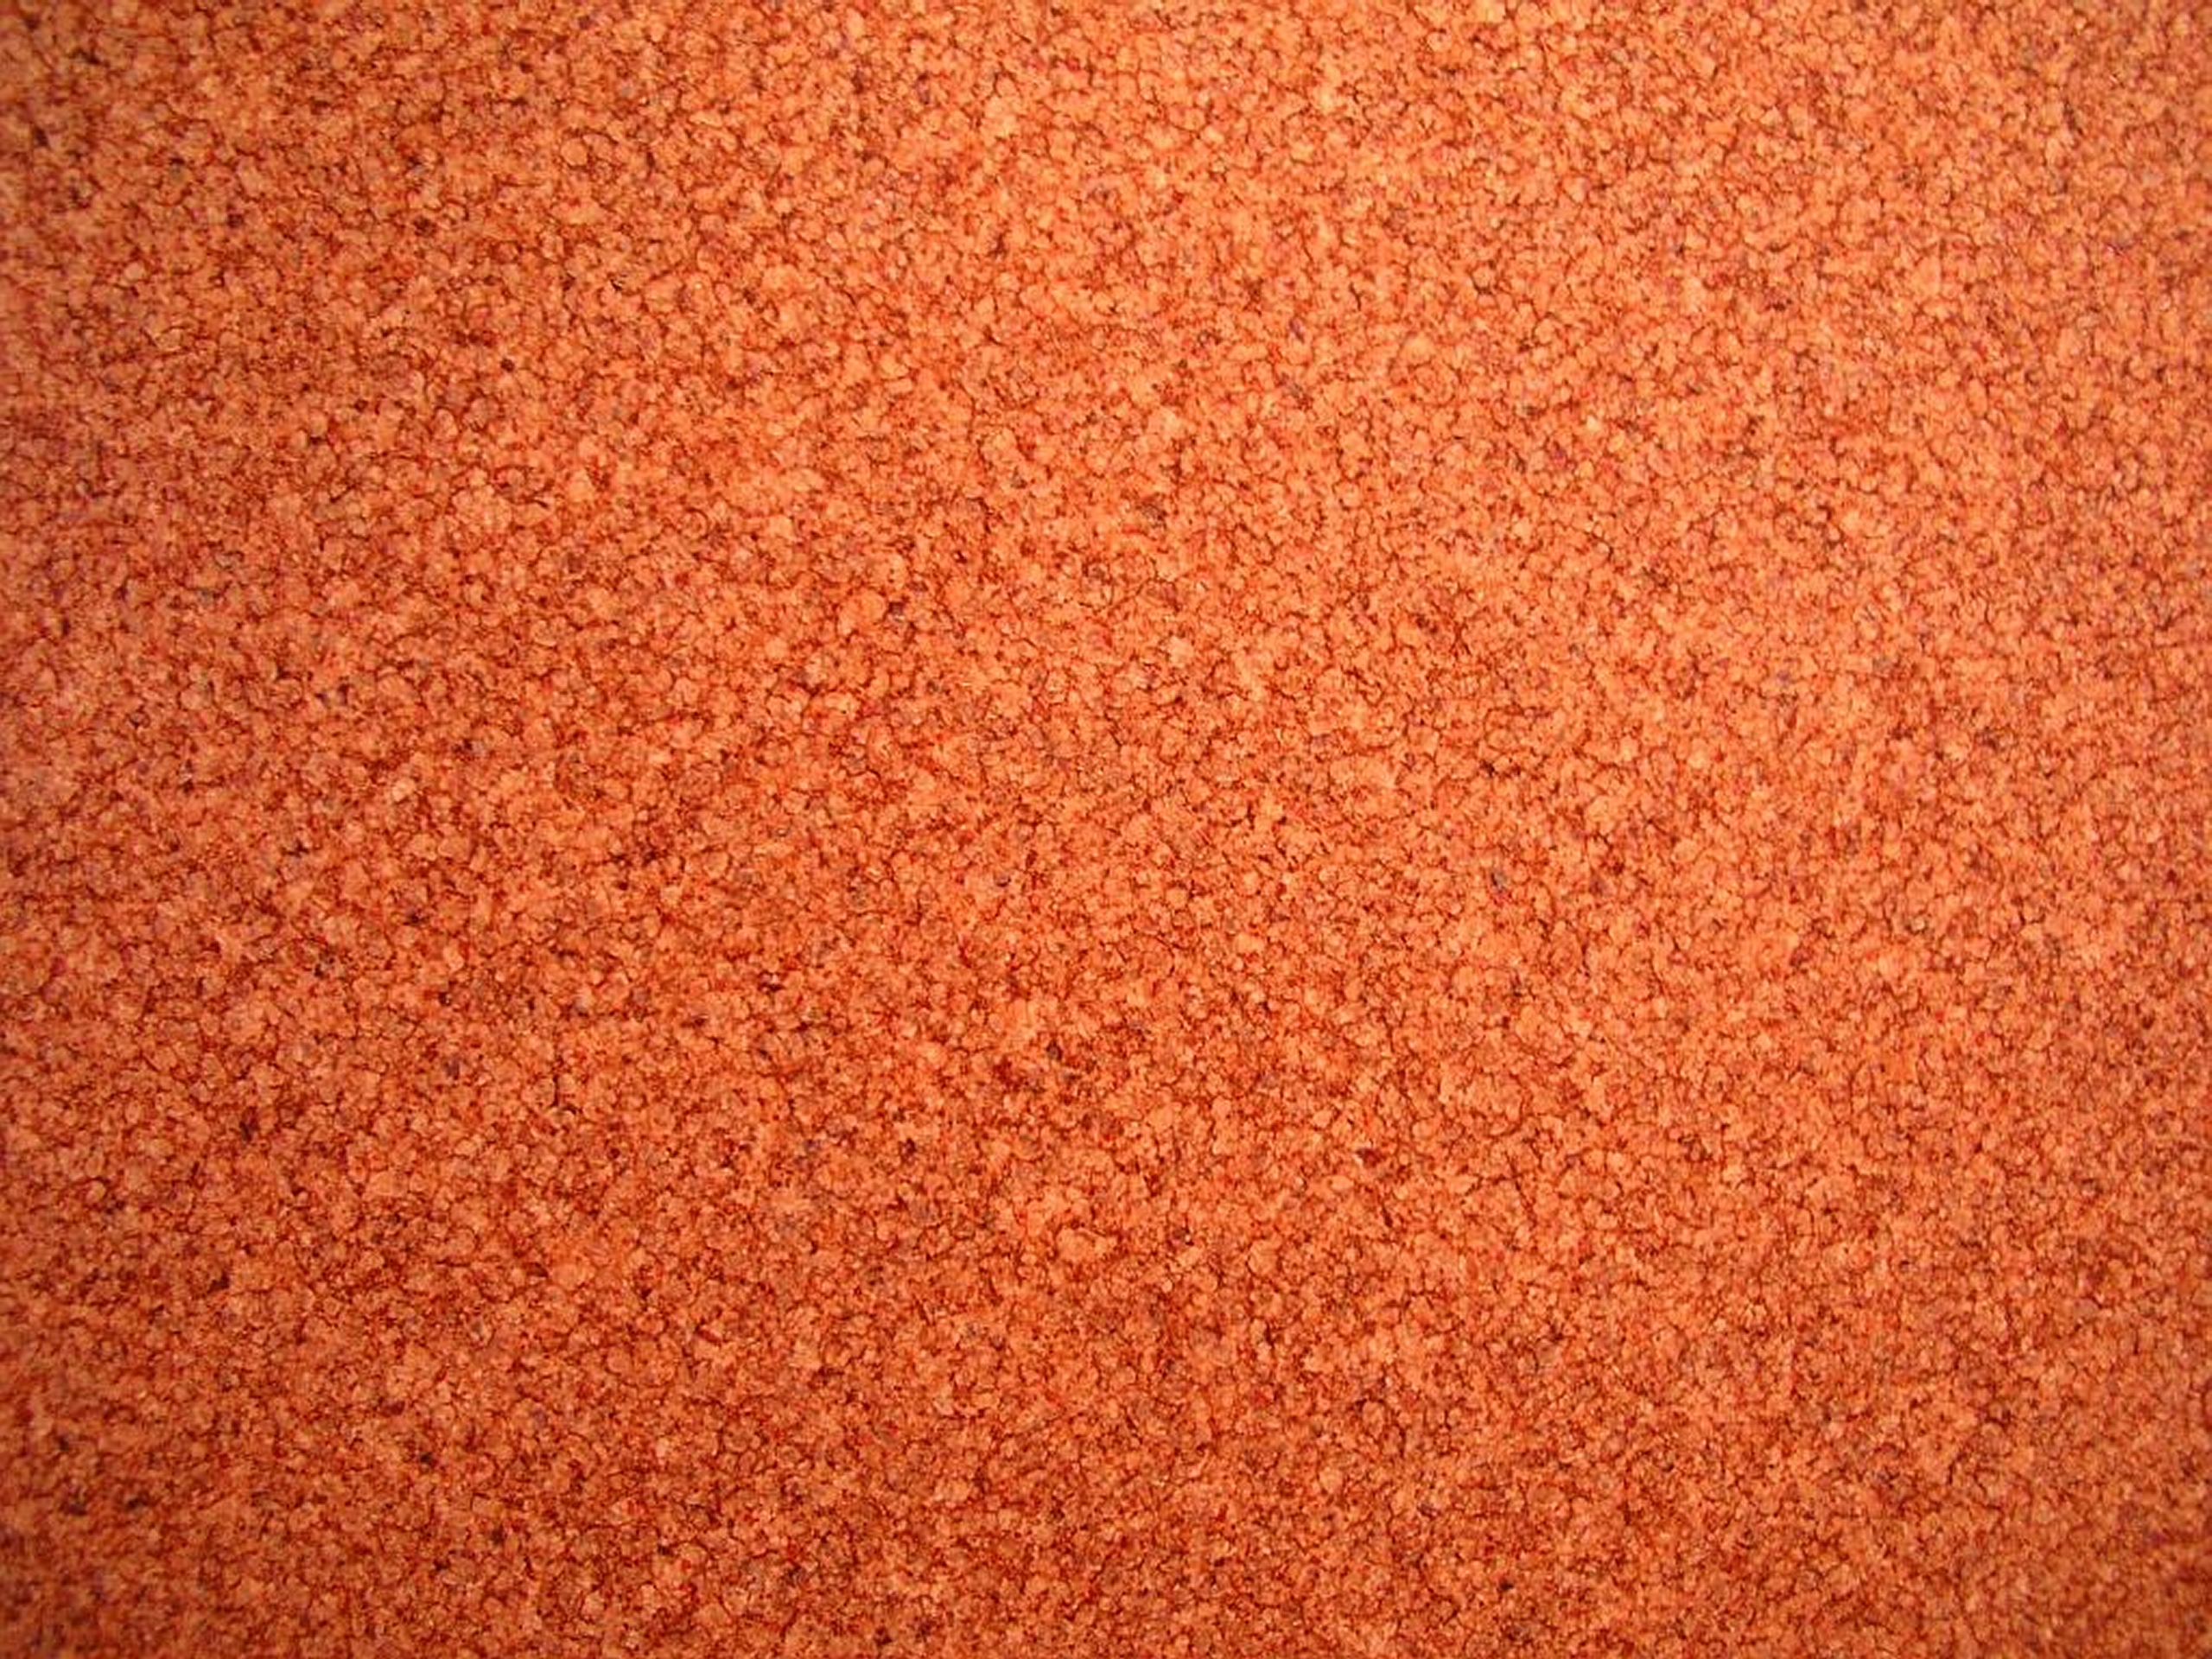 High Qualitylinoleum Flooring Textures Dark Orange Linoleum Flooring